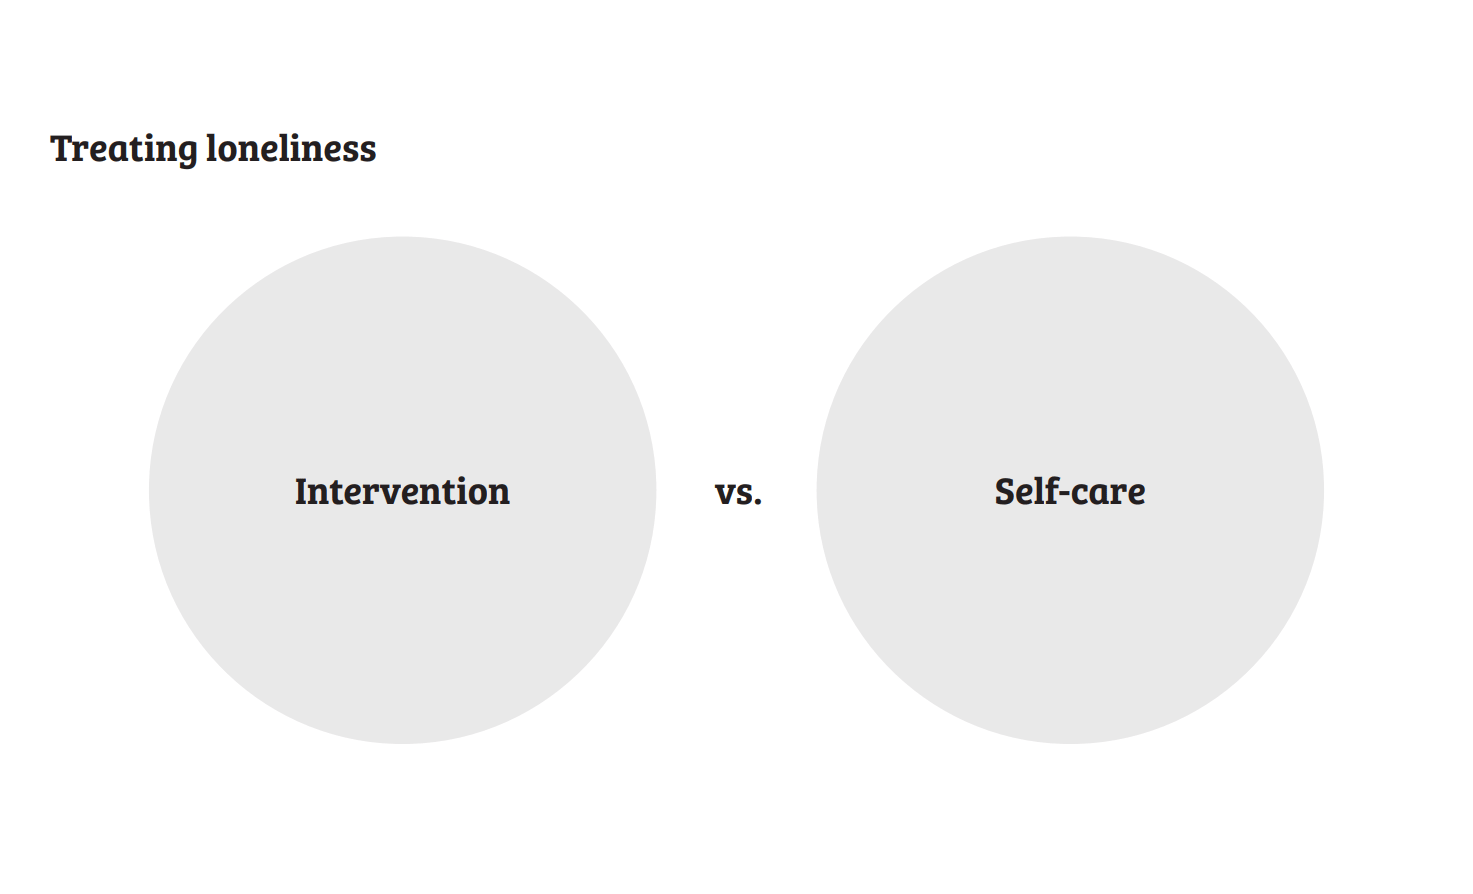 Intervention vs. self-care